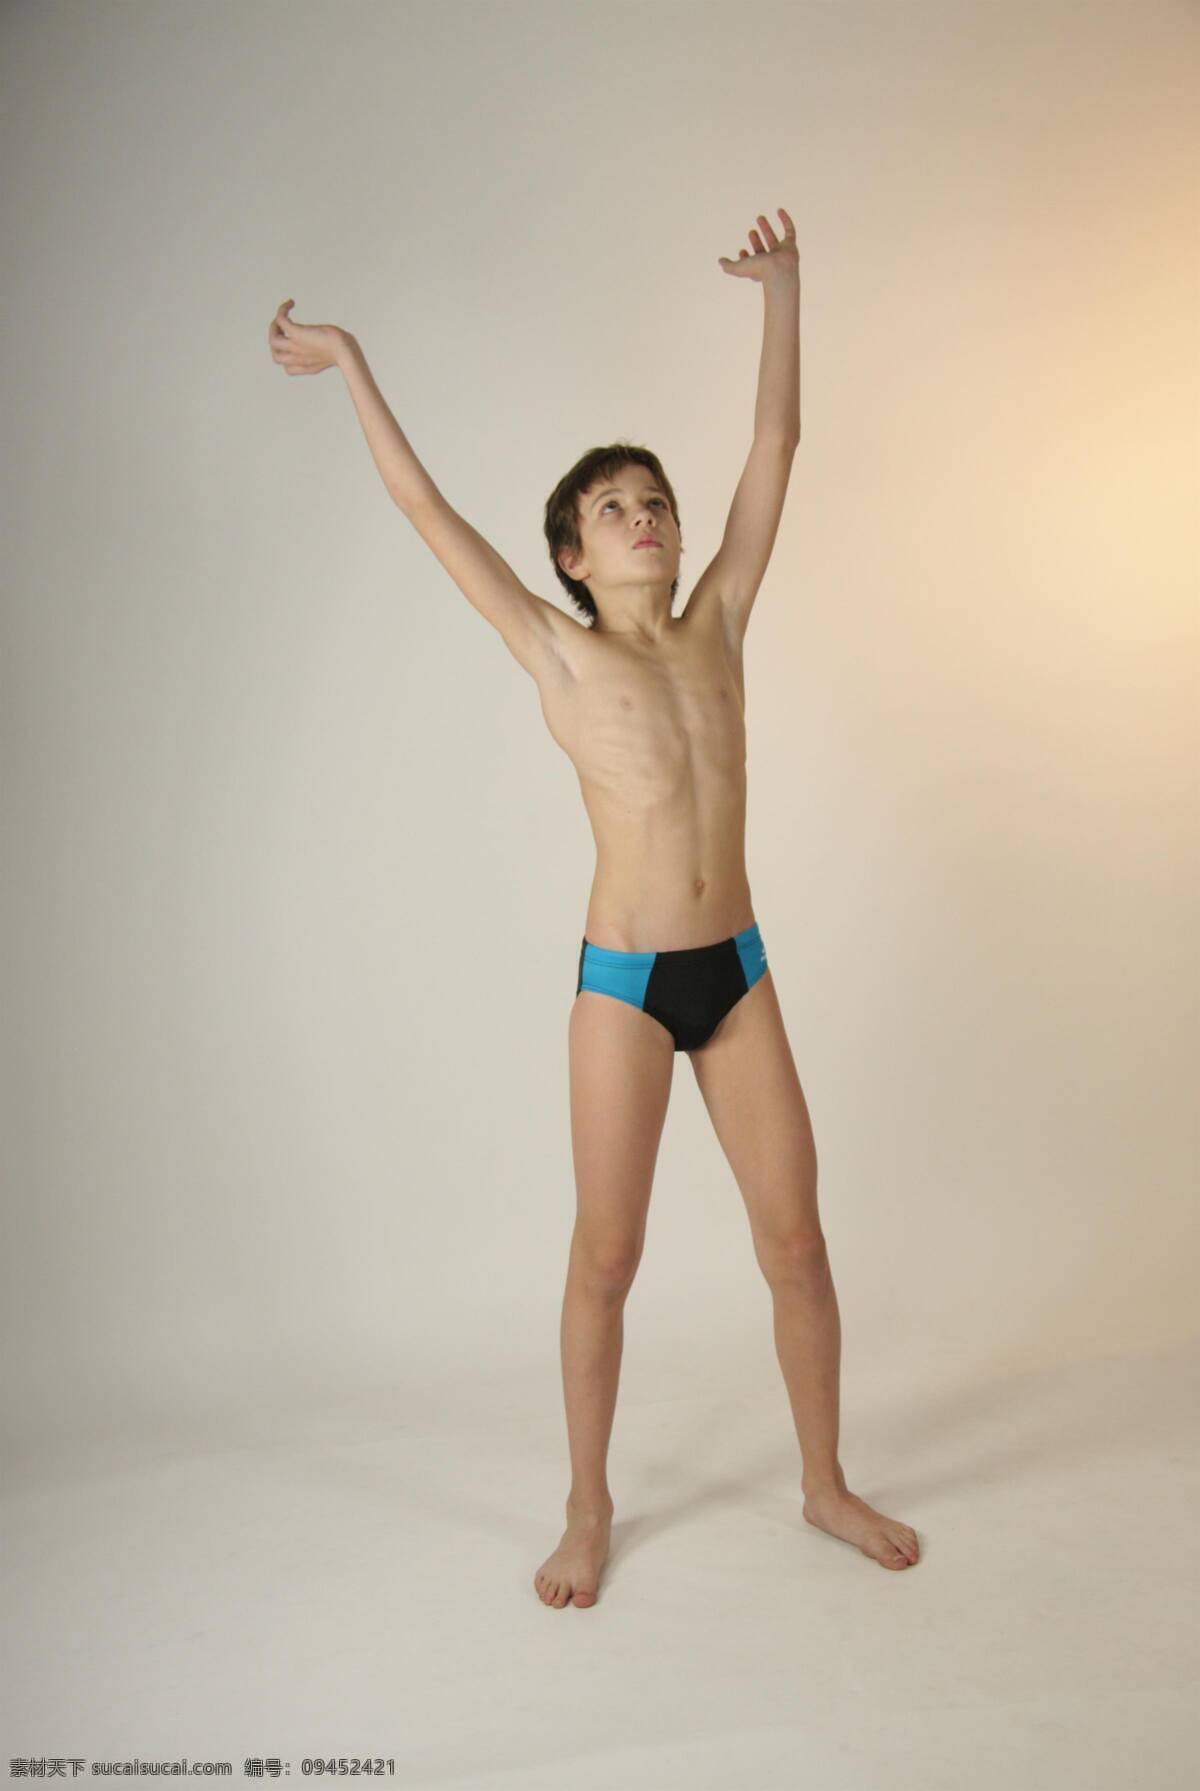 伸展 身体 男孩 室内 外国男孩 西方男孩 泳裤 短裤 游泳裤 运动裤 模特 小模特 少年儿童 姿势 泳装 体育运动 文化艺术